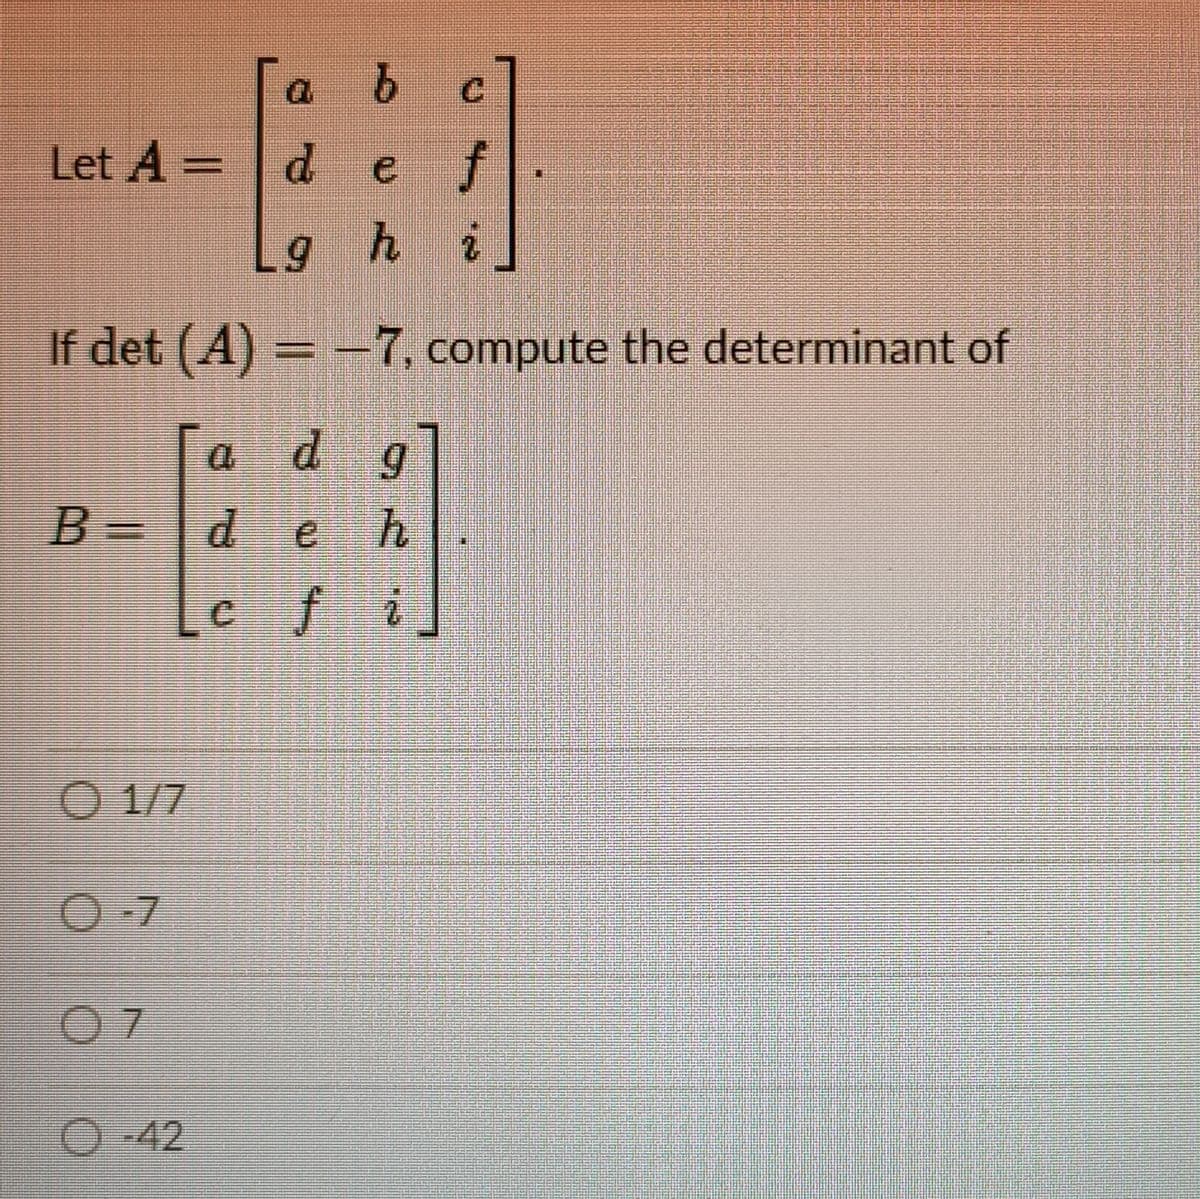 Let A =
d.
e f
ghi
If det (A) = -7, compute the determinant of
a dg
B =
deh
cfi
O 1/7
O-7
O-42
